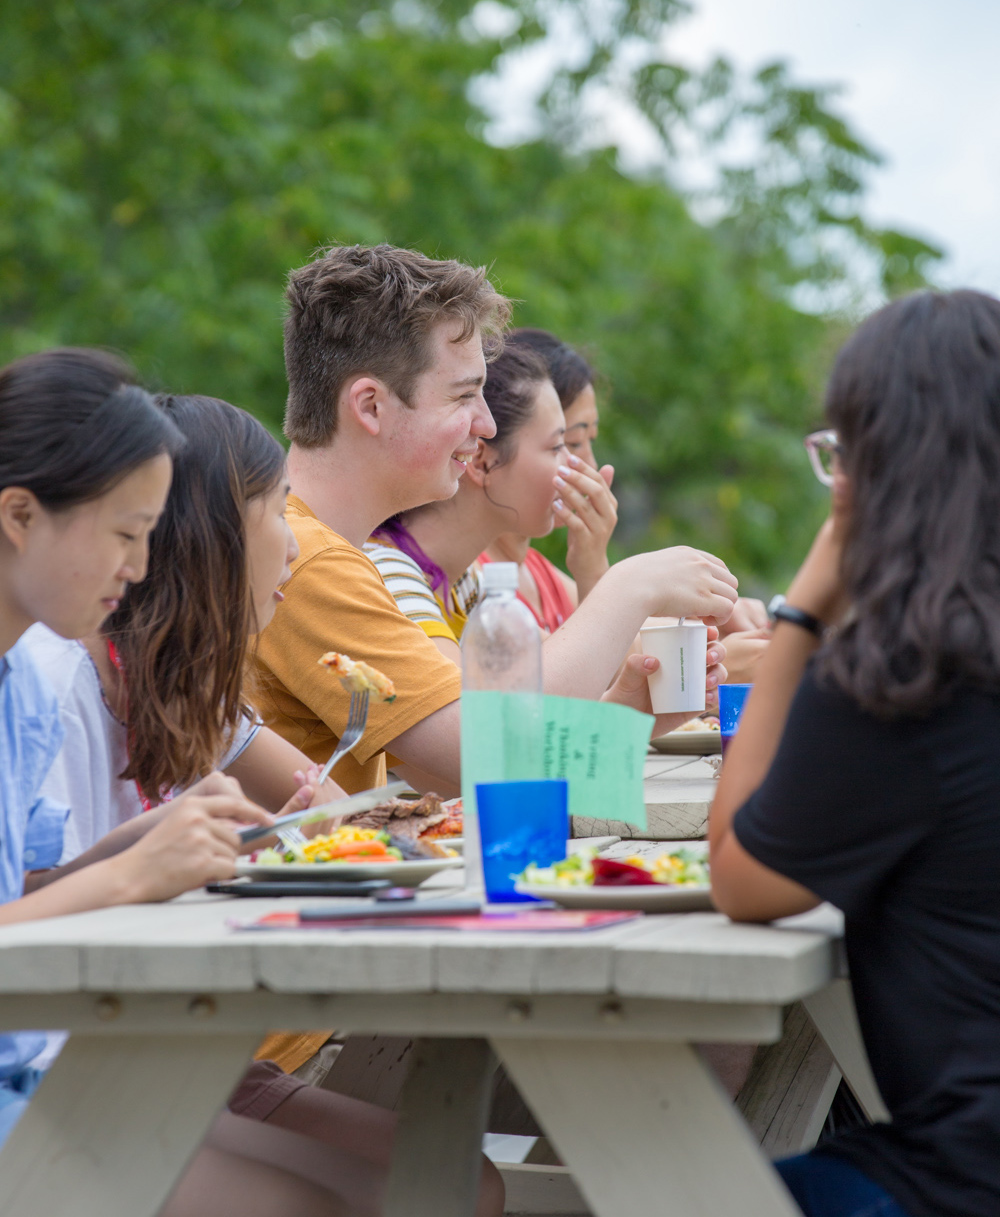 students at picnic table